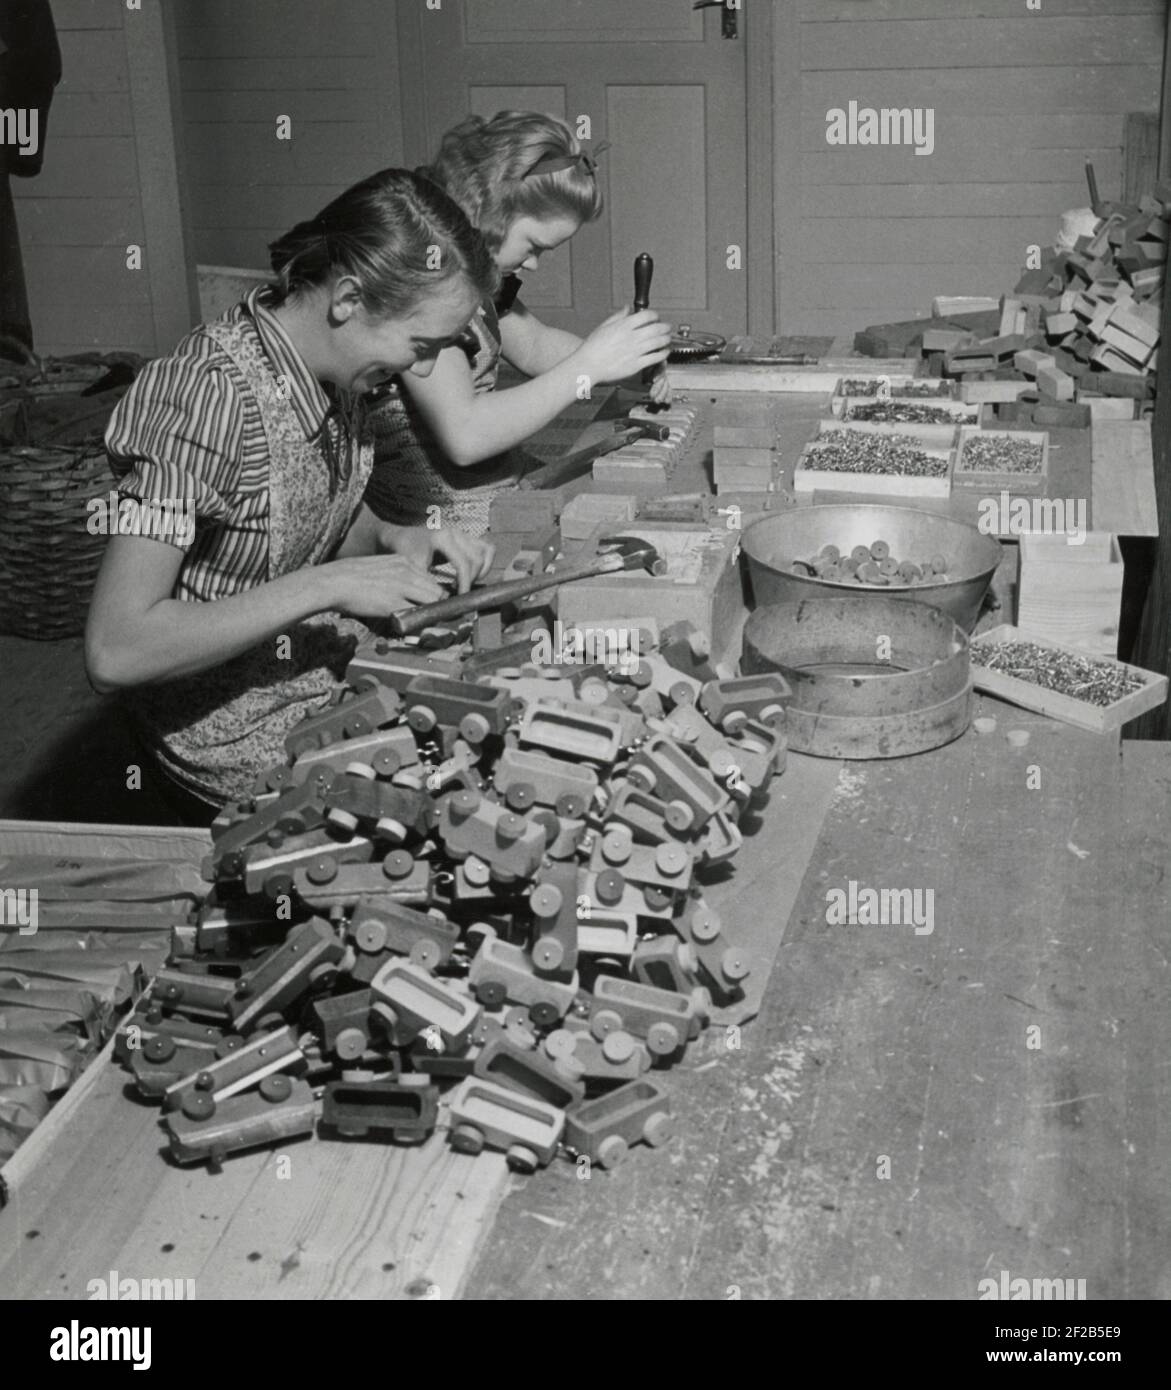 Fabrication de jouets dans les années 1940. Intérieur de l'usine du fabricant suédois de toymaker Westroths i Kulltorp. Deux femmes sont montées des roues sur les trains de jouets en bois qui étaient des jouets classiques pour enfants. Suède 1940 Banque D'Images